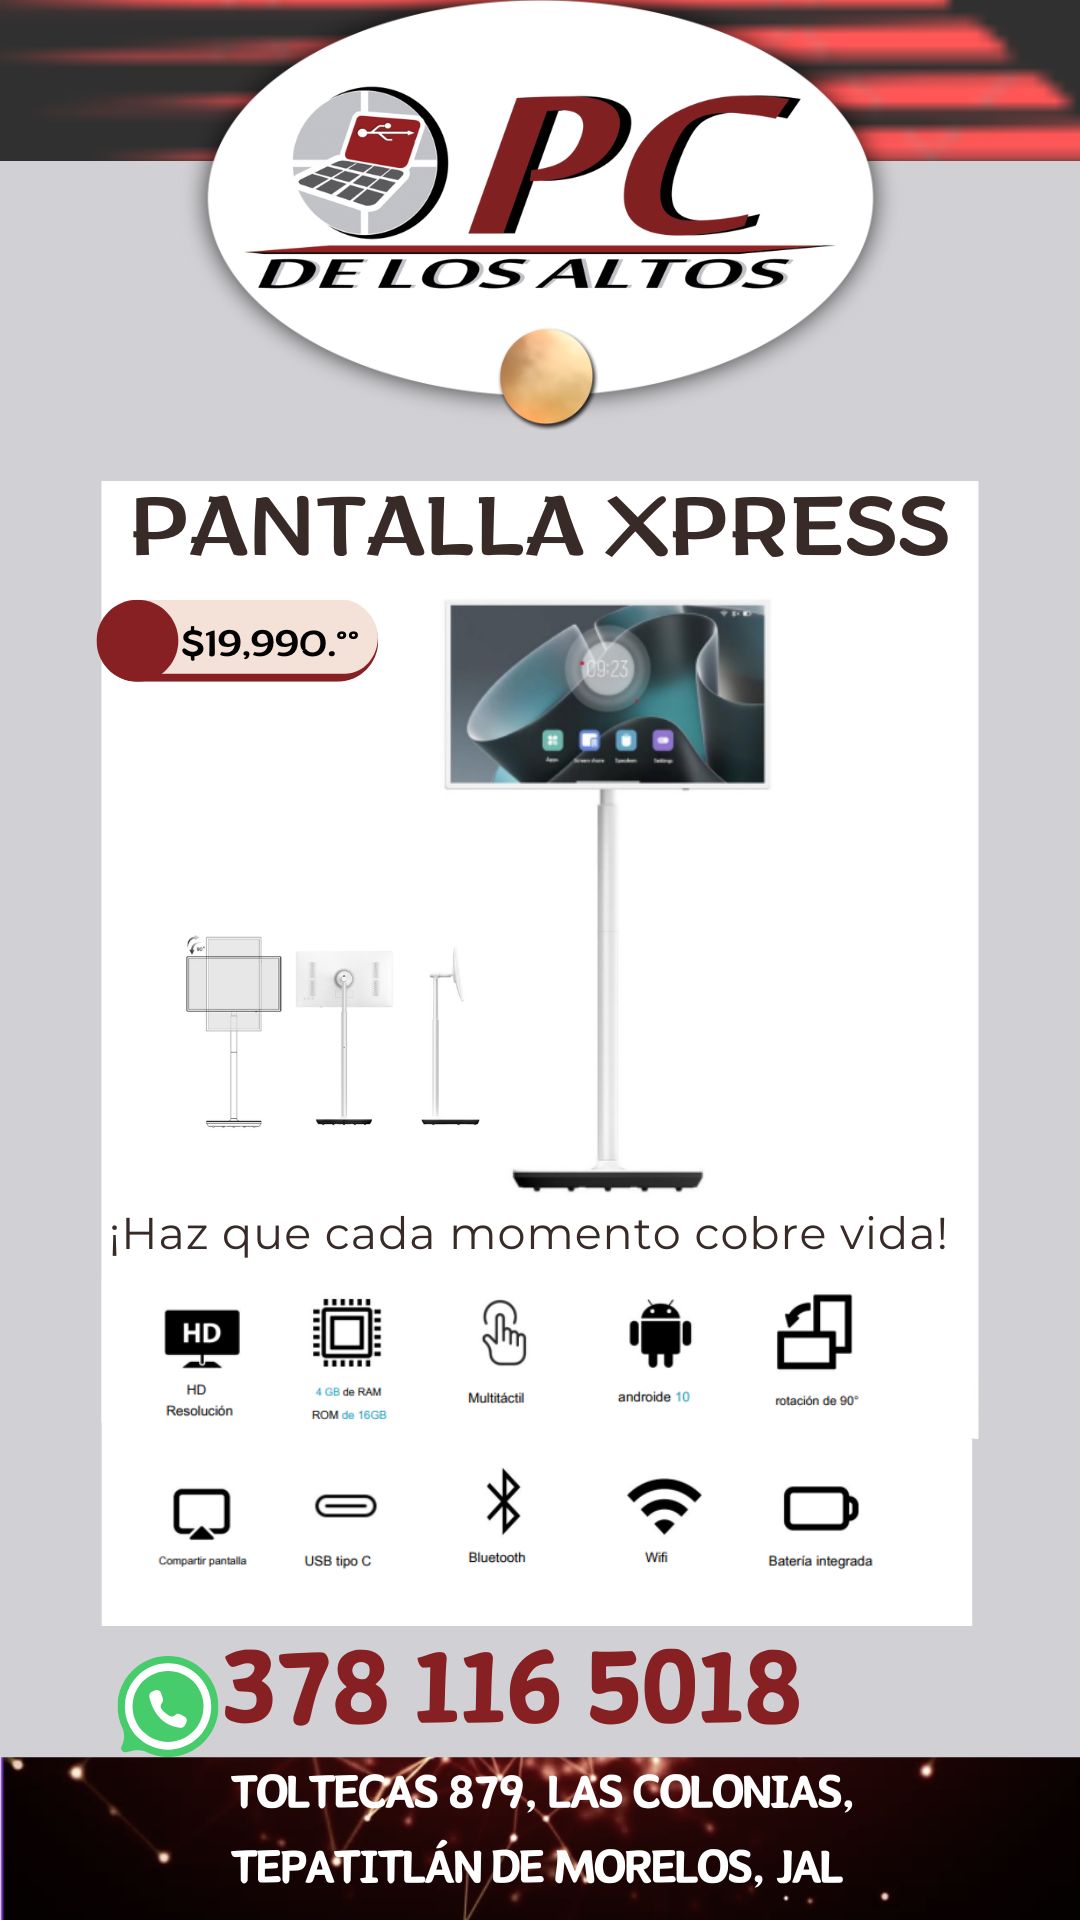 PANTALLA XPRESS